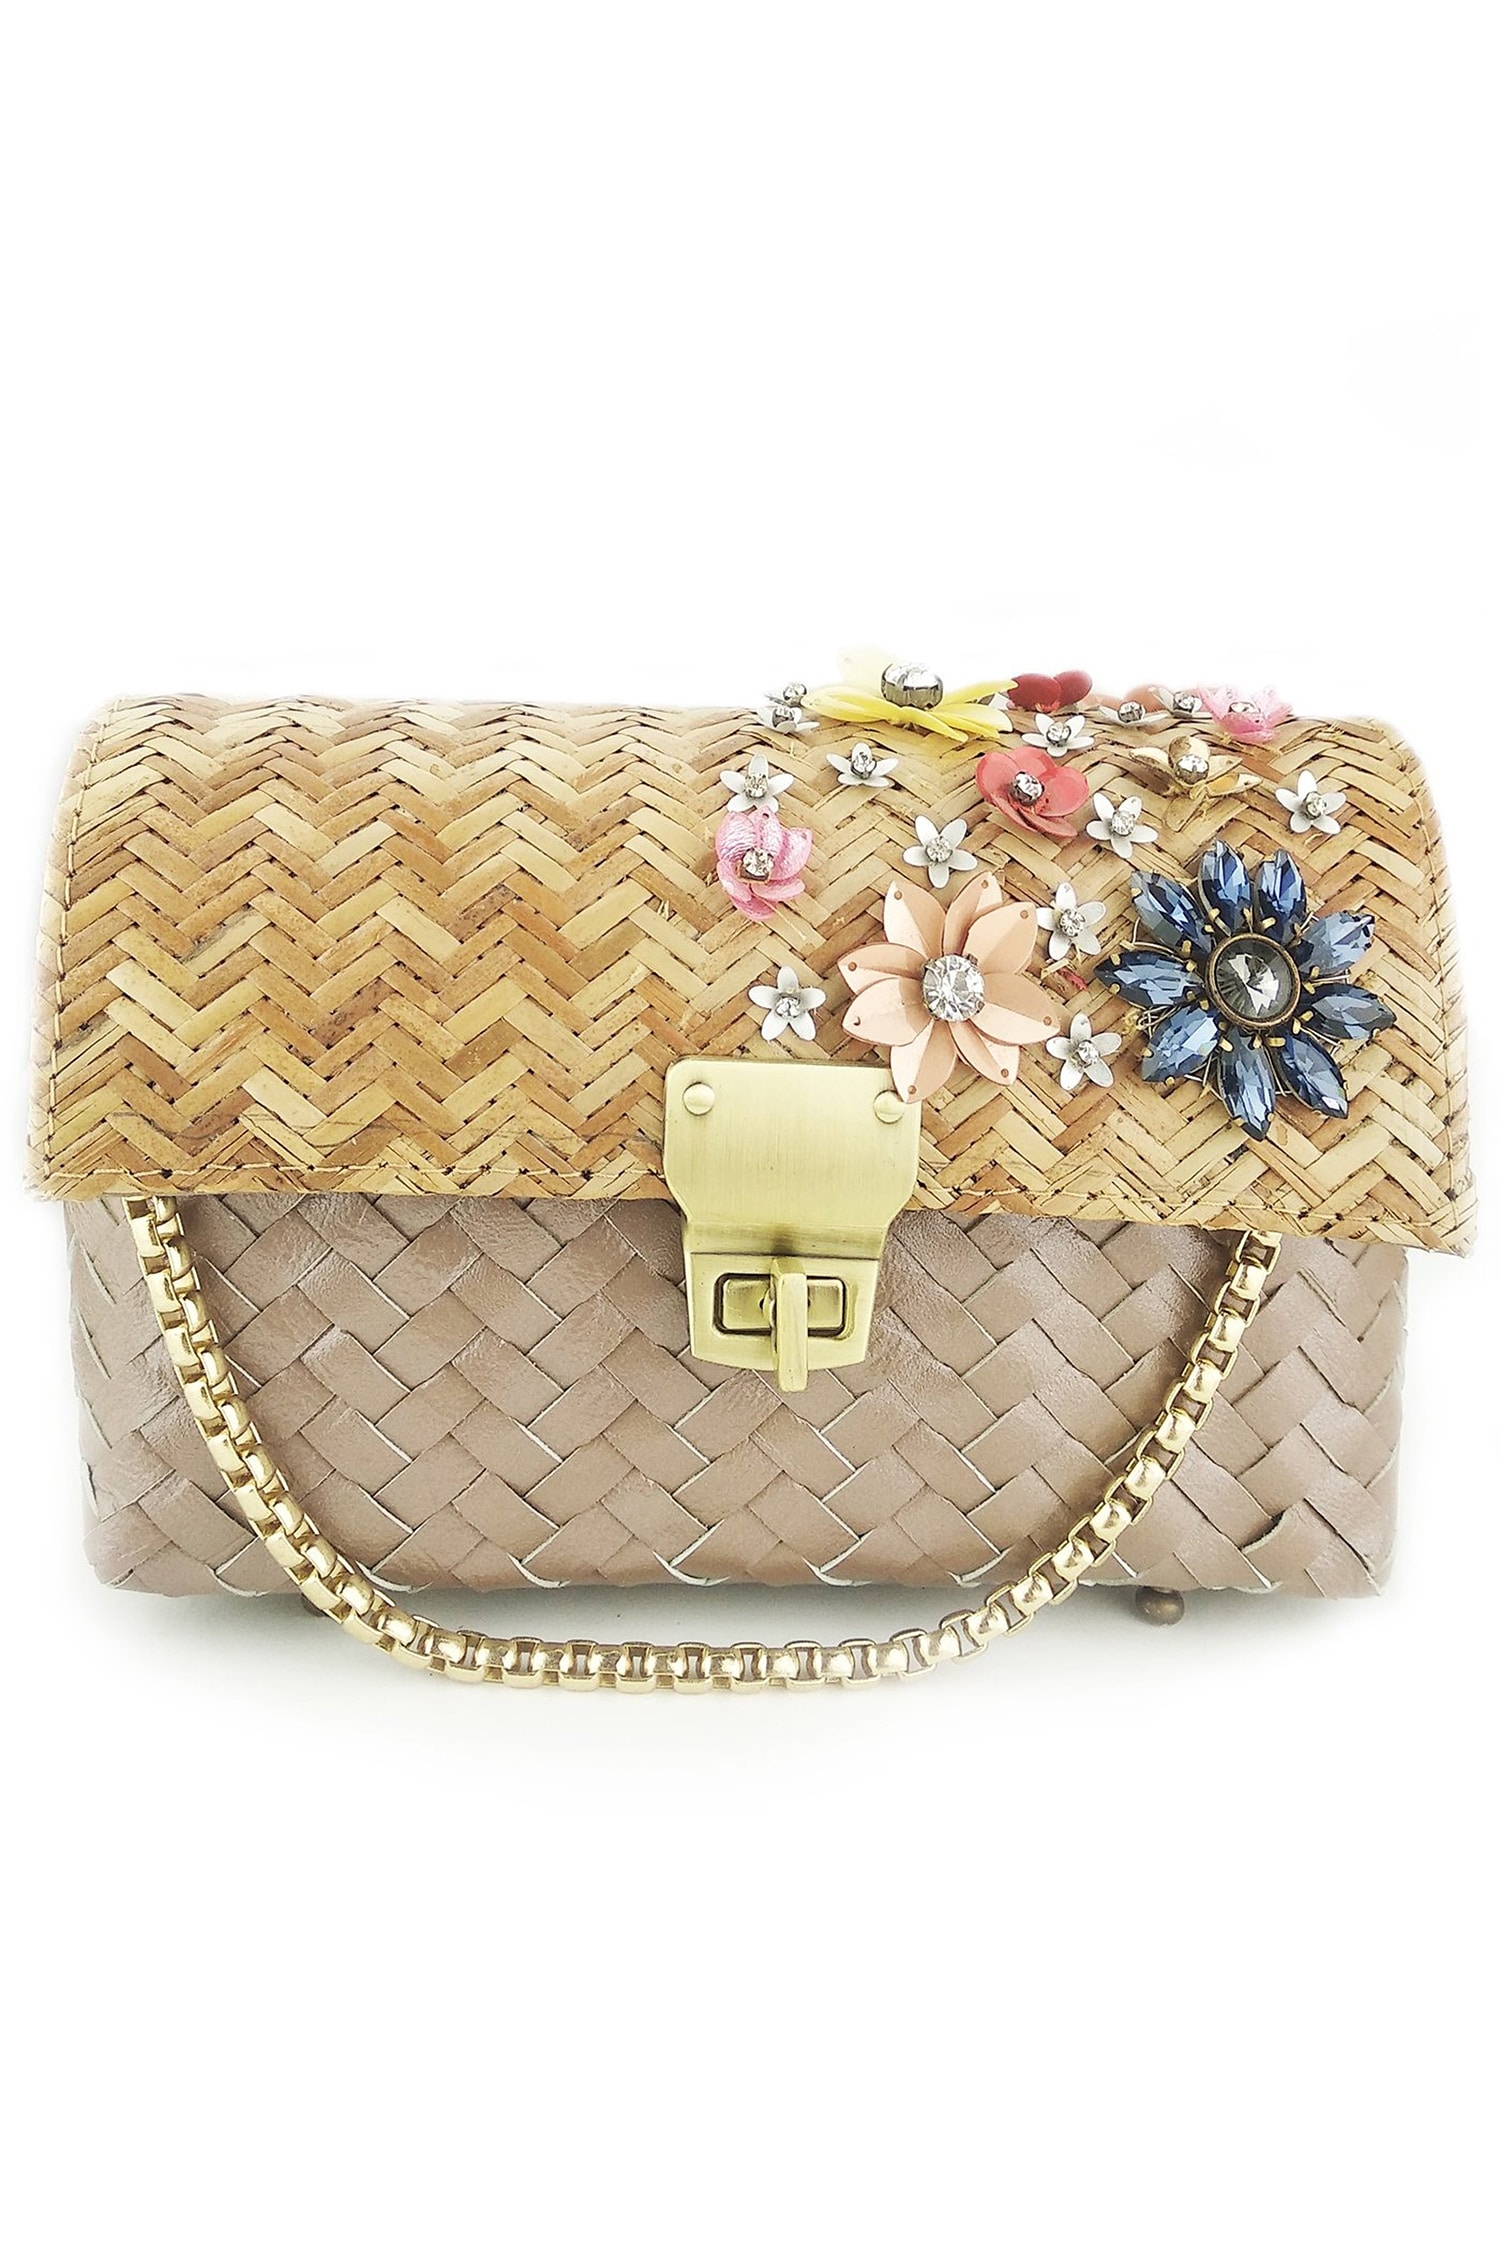 Buy ESBEDA Gold Color Hotty Embellished Sling bag for Women online